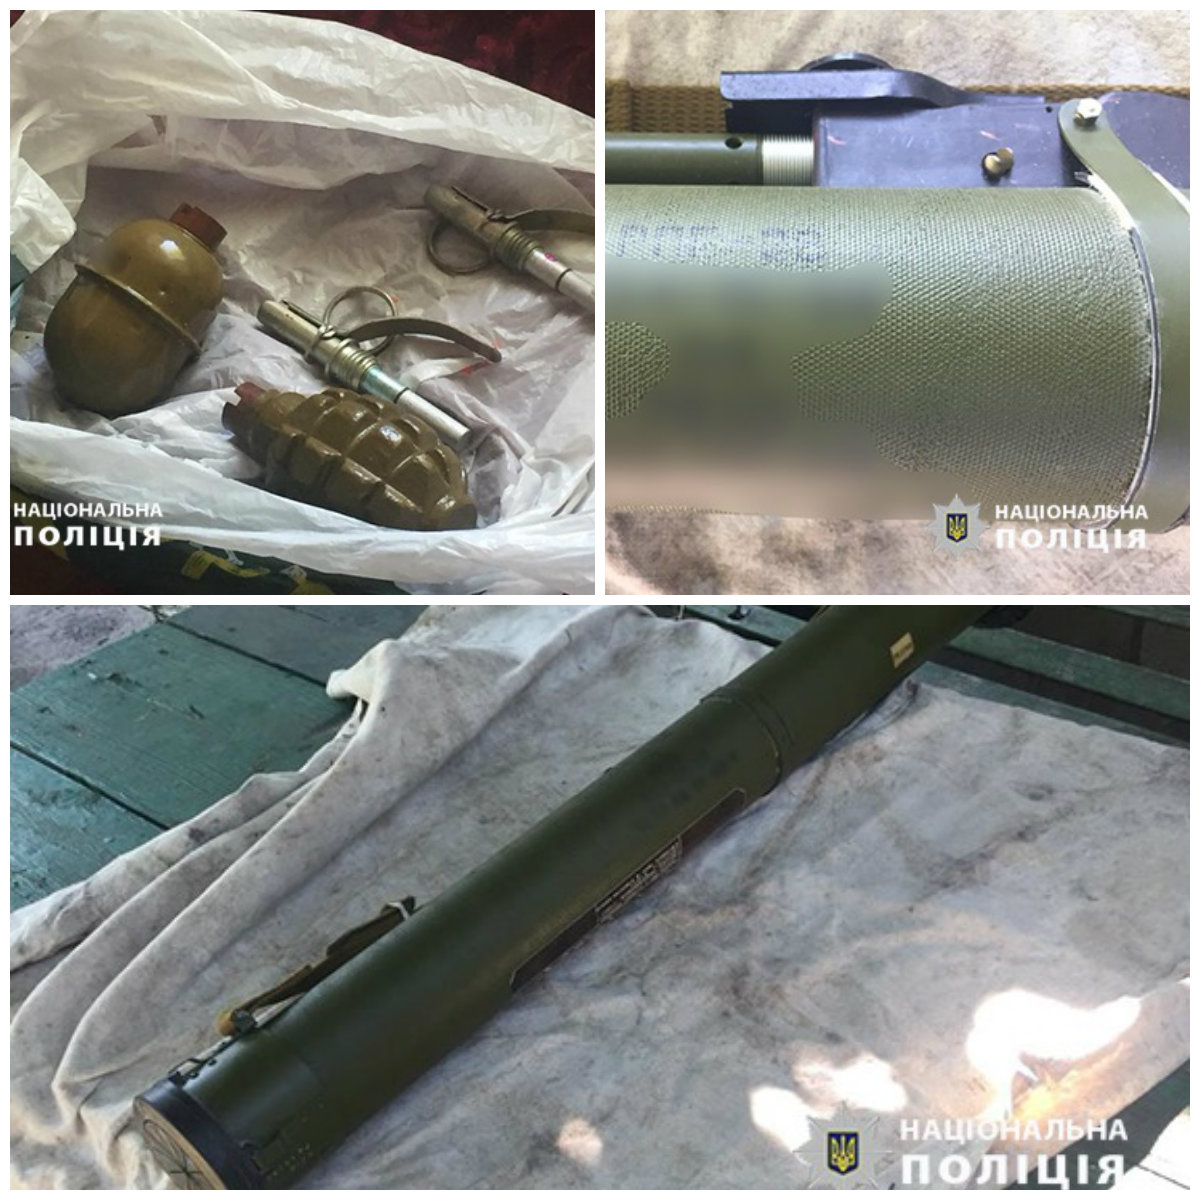 У жителя Марганца нашли гранатомет и гранаты